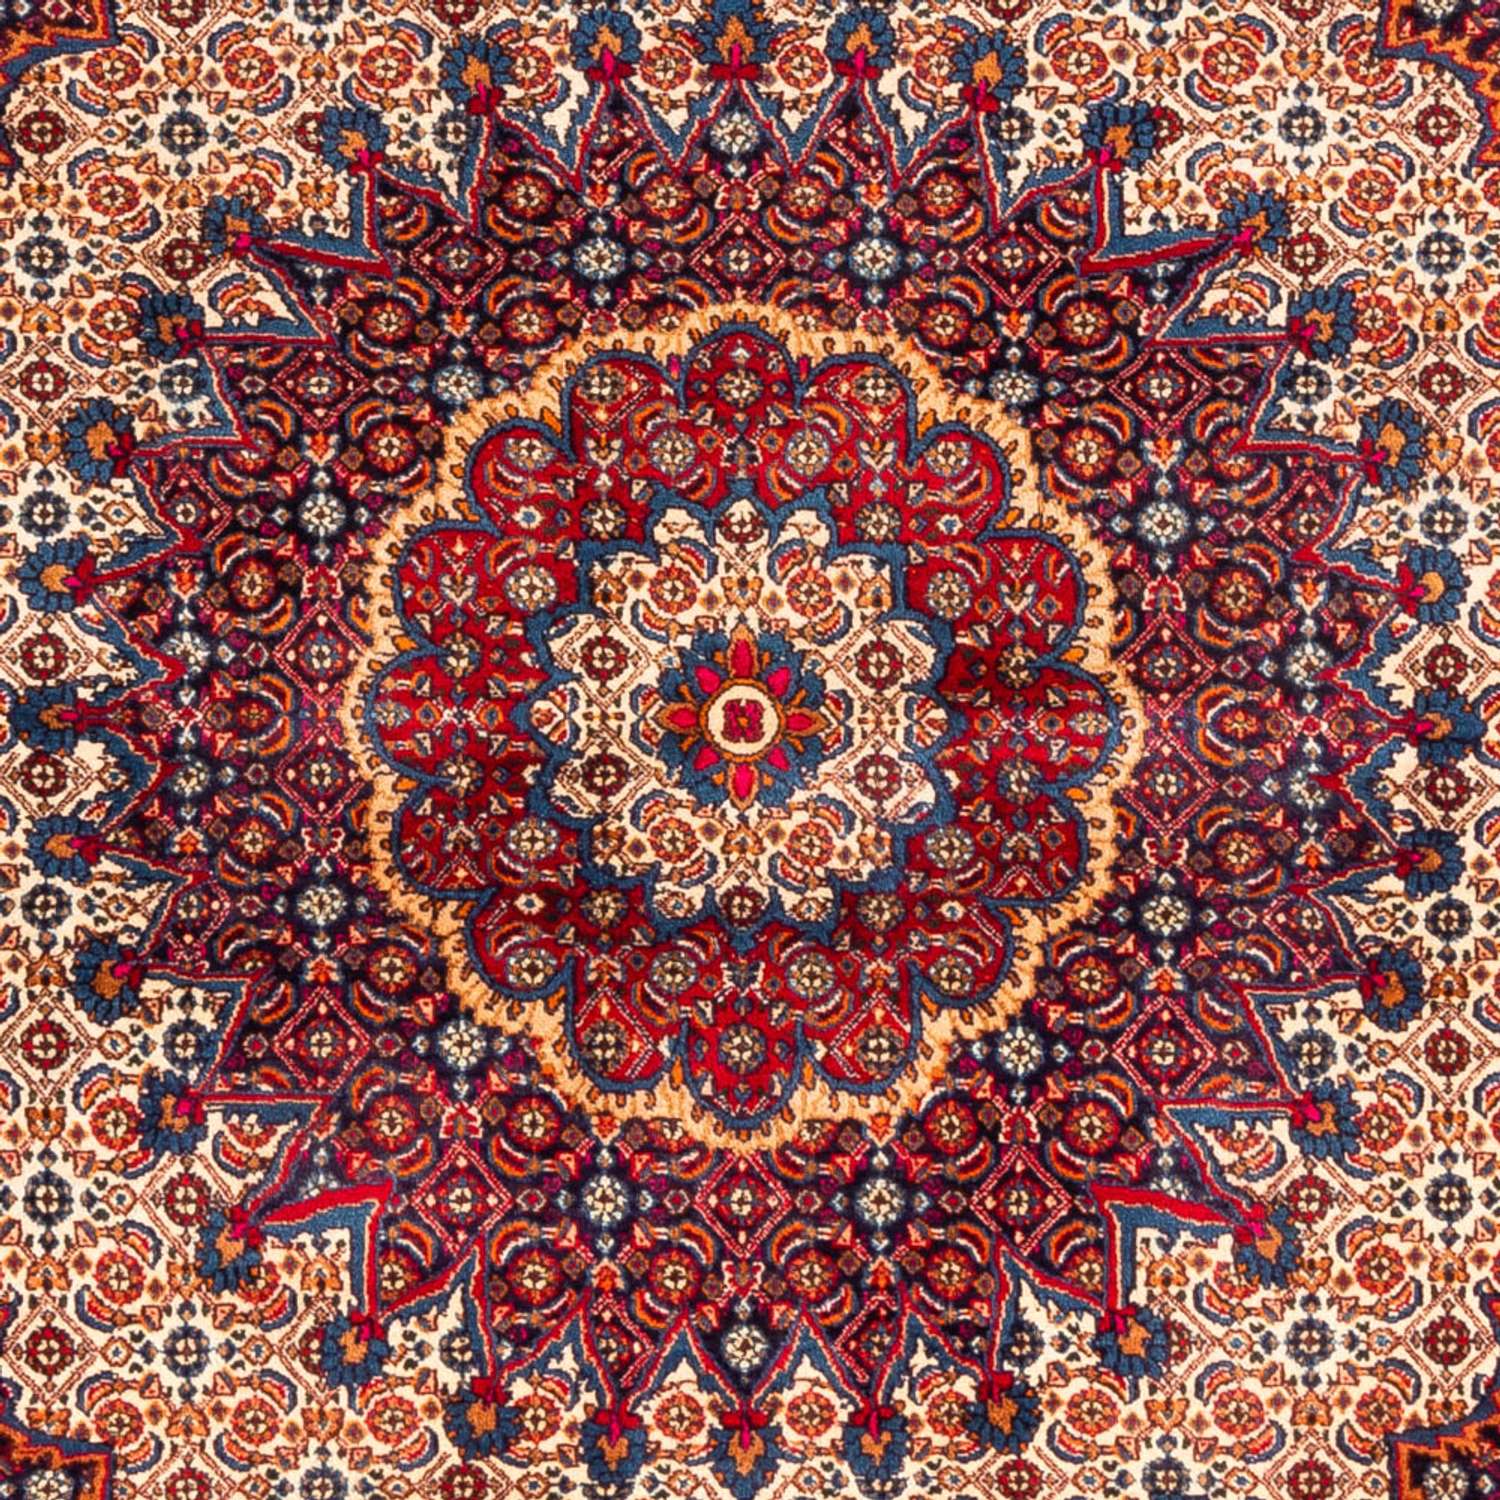 Persisk teppe - klassisk - 262 x 217 cm - rød